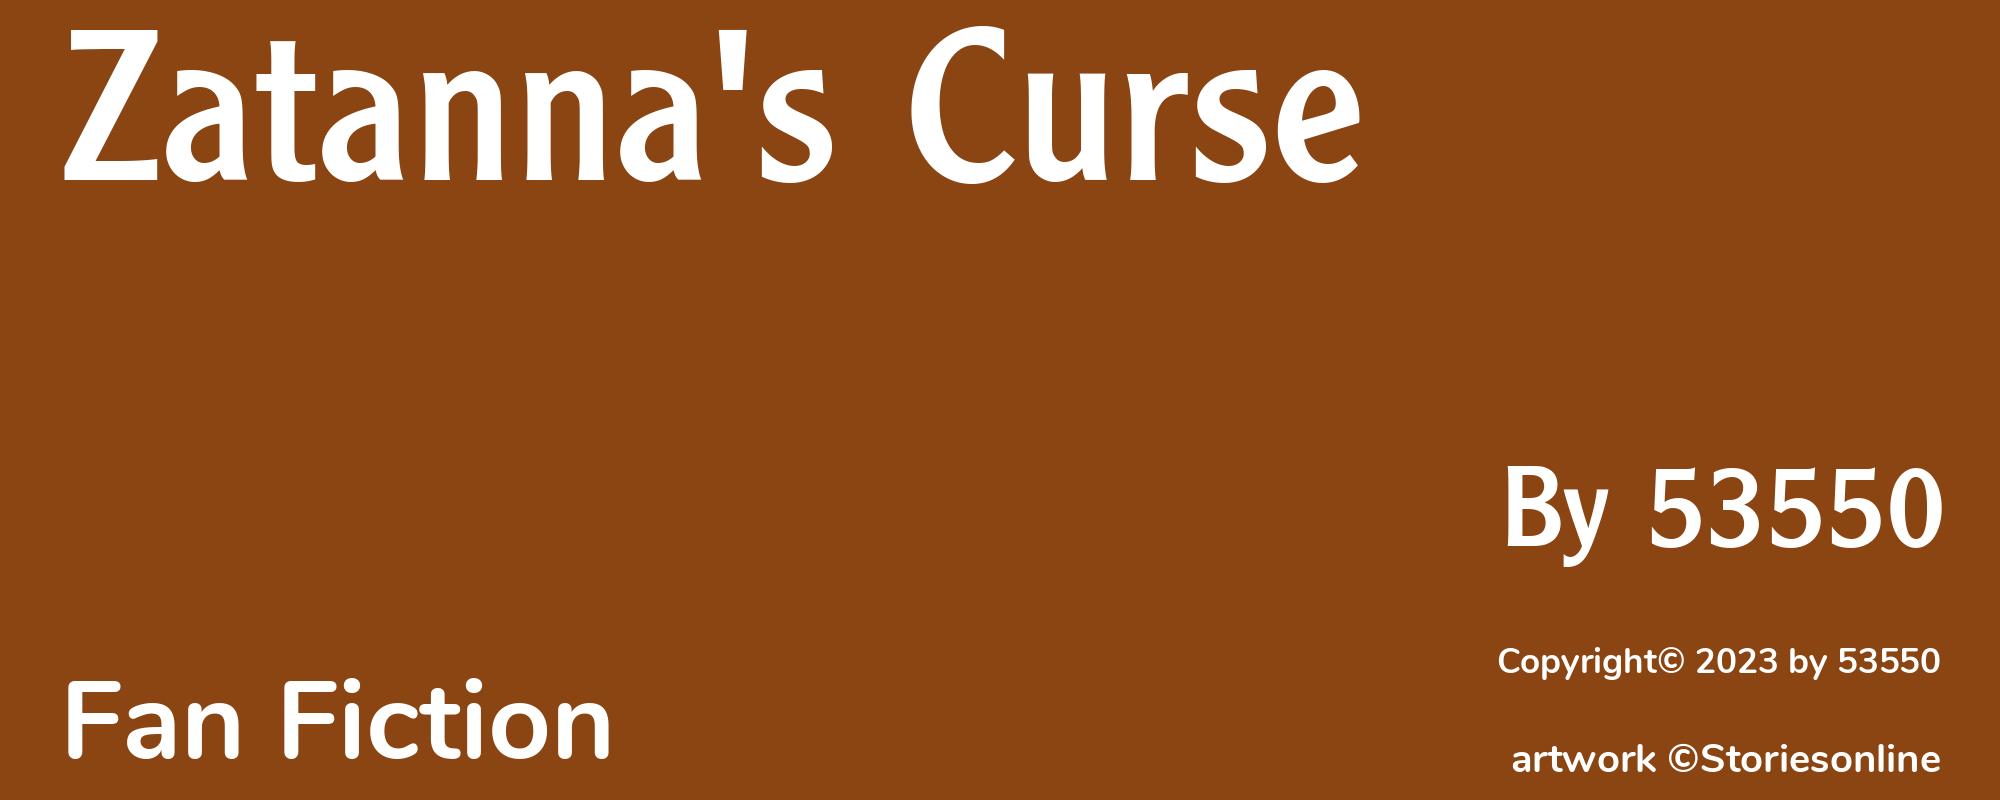 Zatanna's Curse - Cover